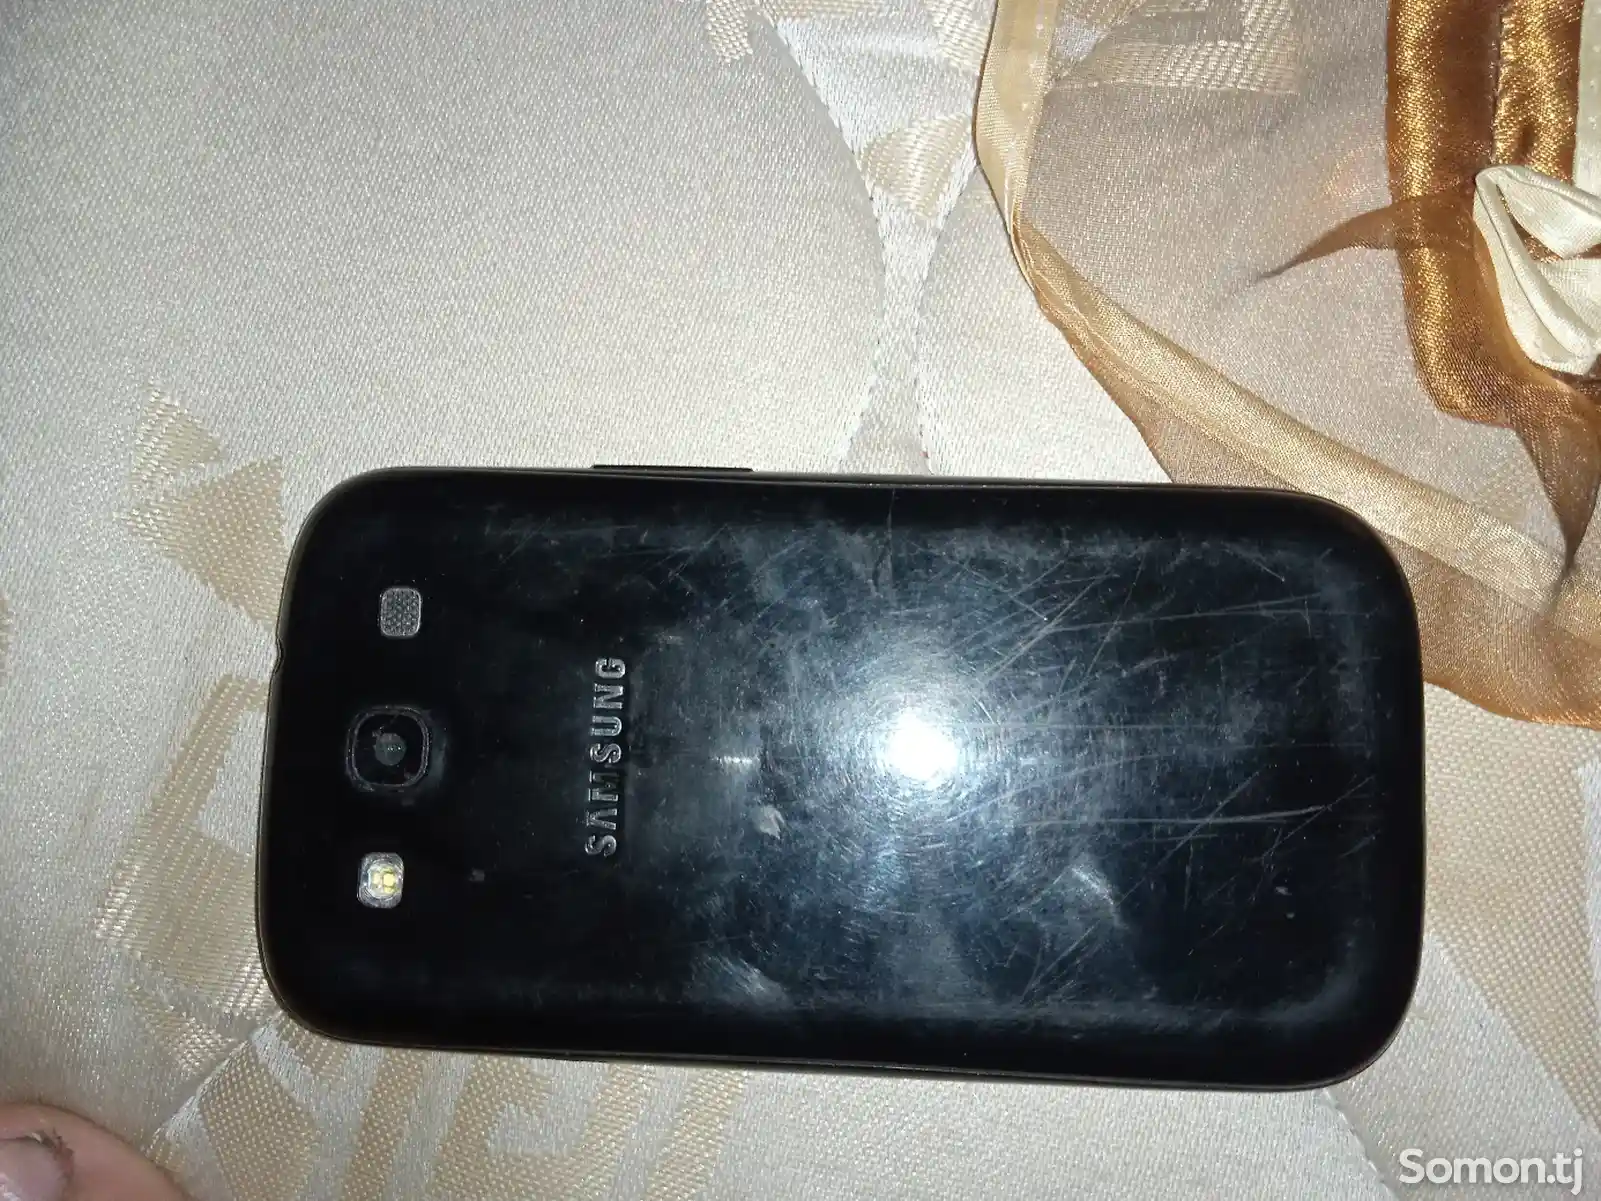 Samsung Galaxy S3-2